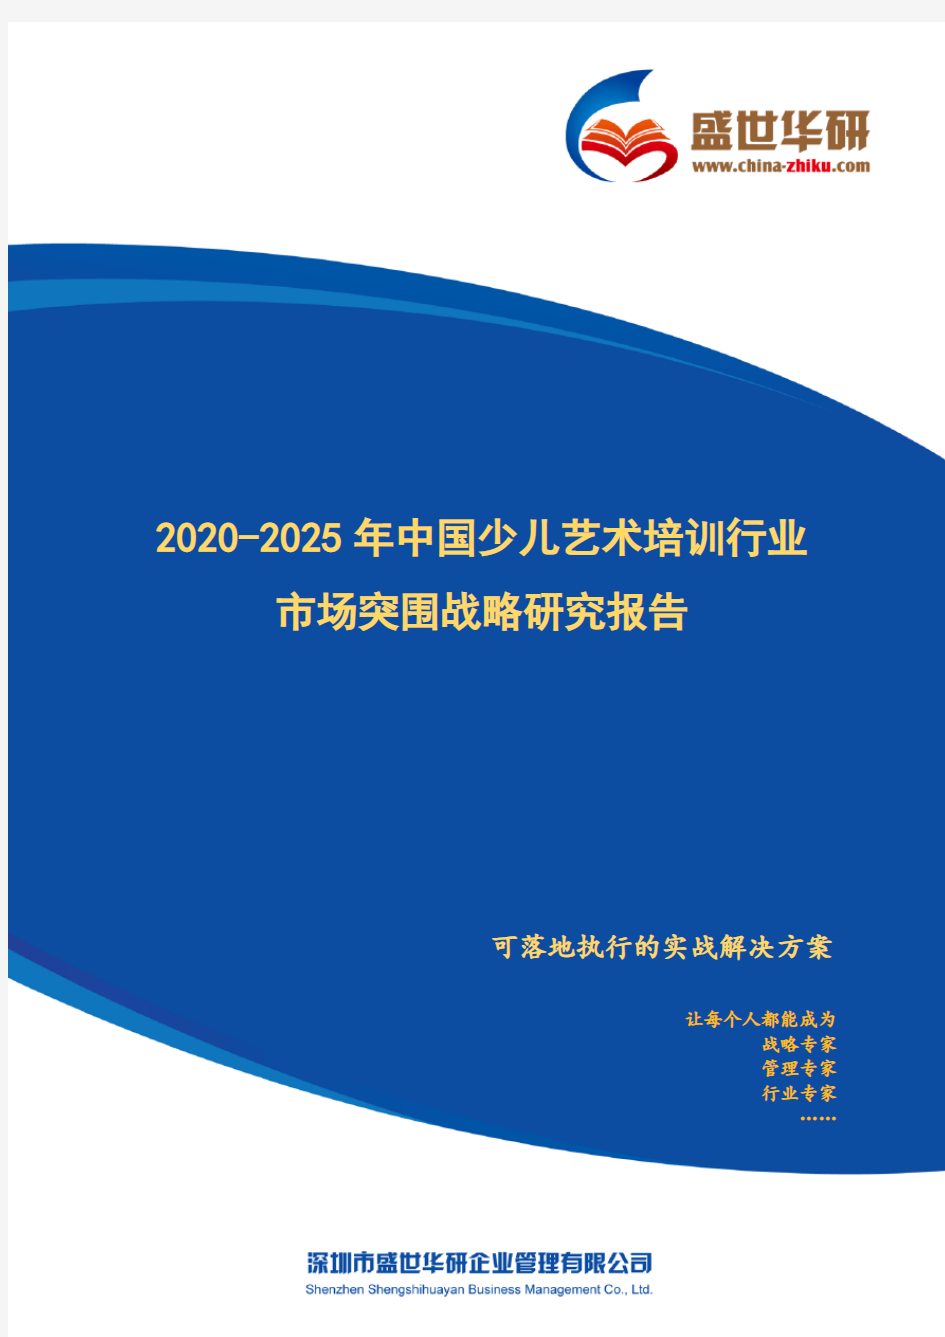 【完整版】2020-2025年中国少儿艺术培训行业市场突围策略研究报告